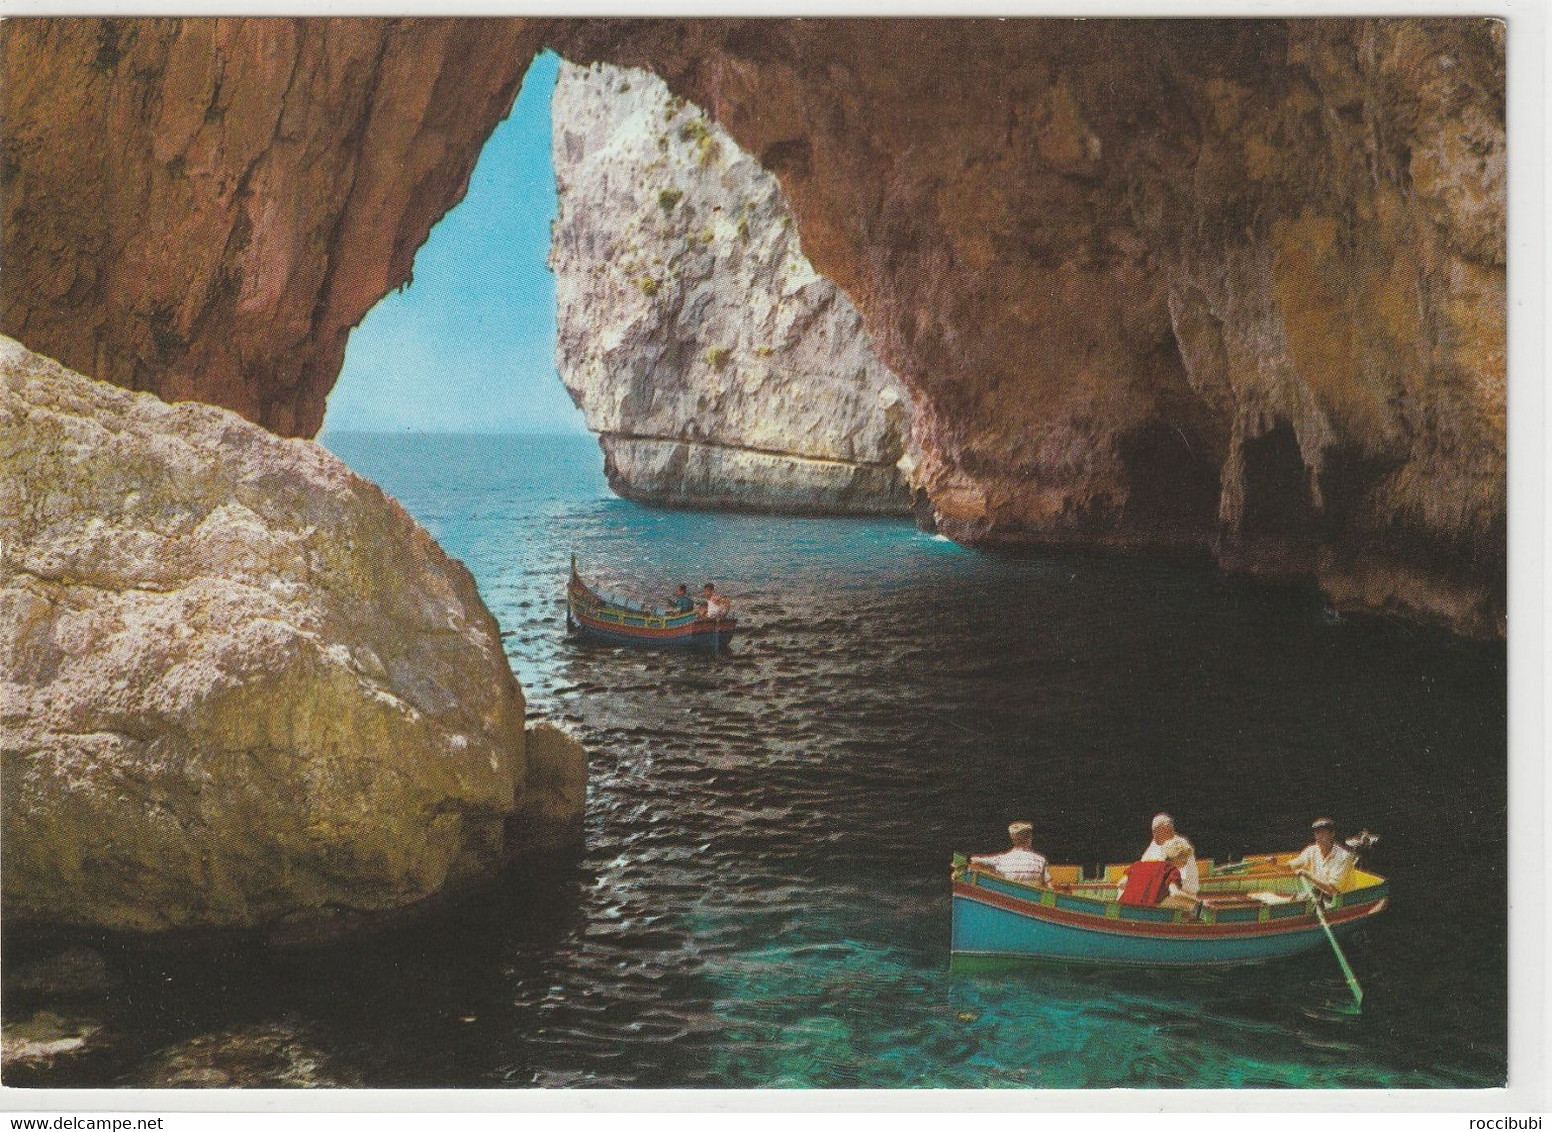 Blue Grotto - Malta